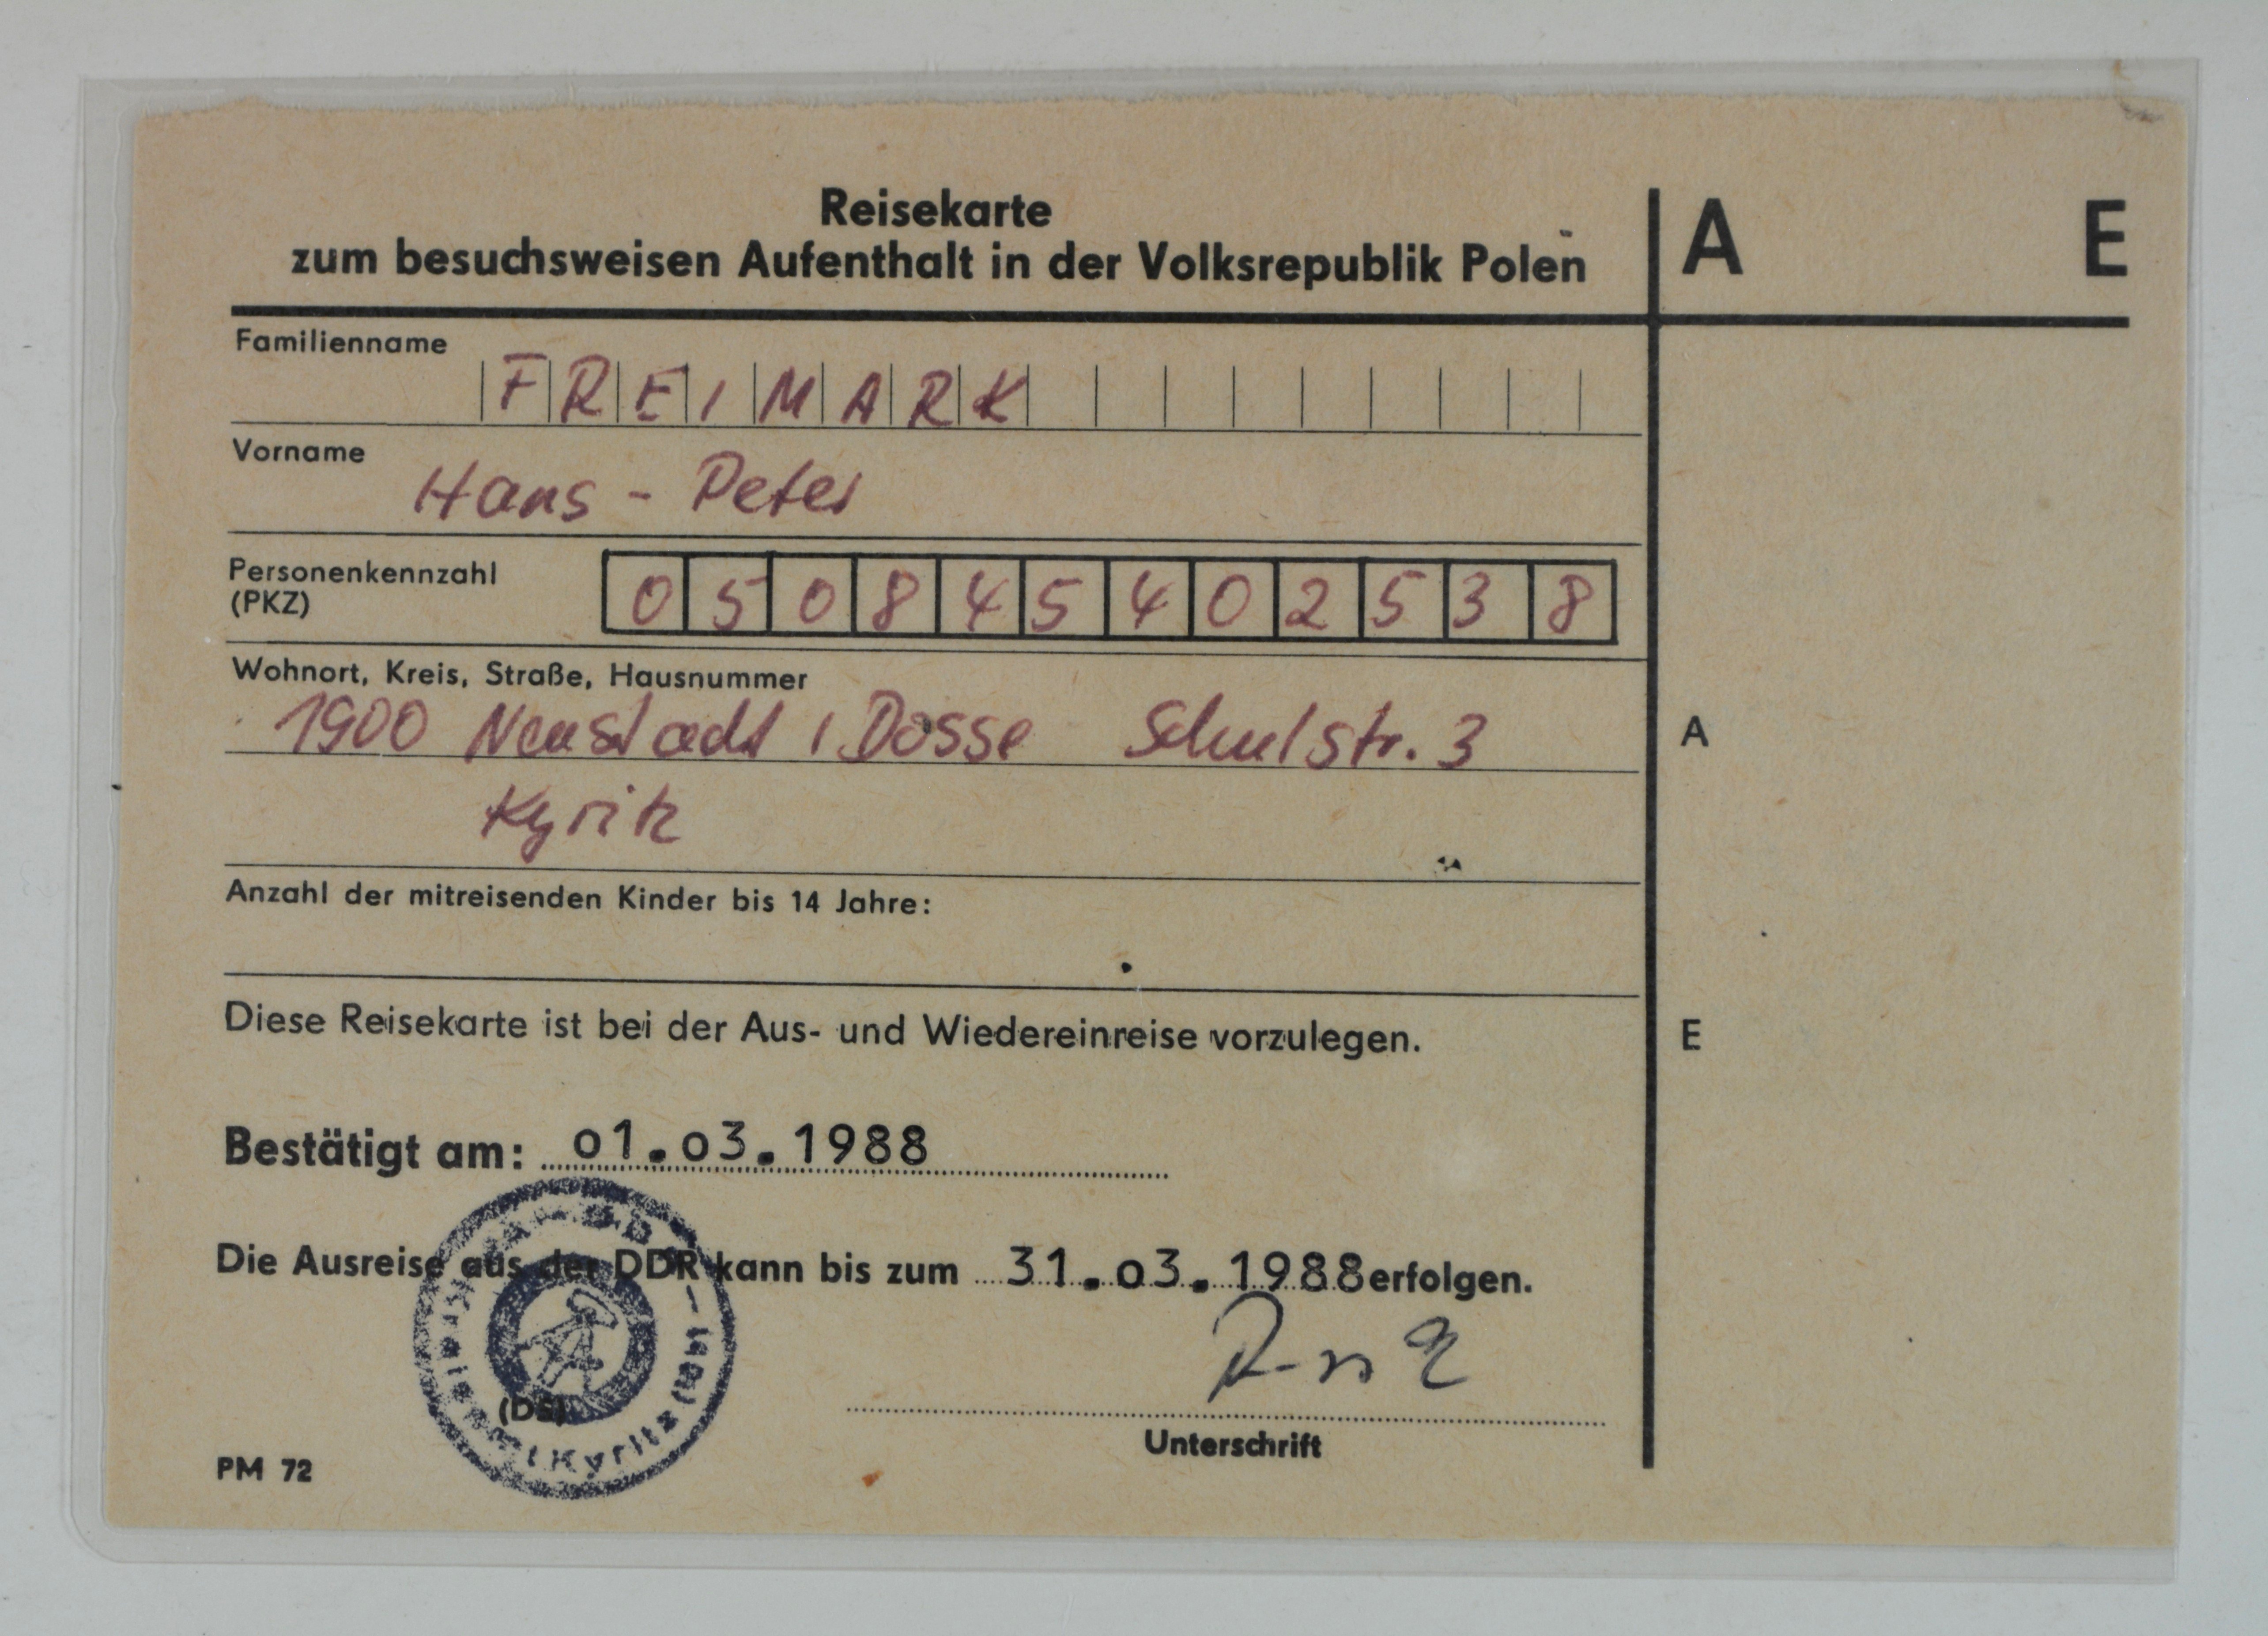 Reisekarte für die Volksrepublik Polen für Hans-Peter Freimark (DDR Geschichtsmuseum im Dokumentationszentrum Perleberg CC BY-SA)